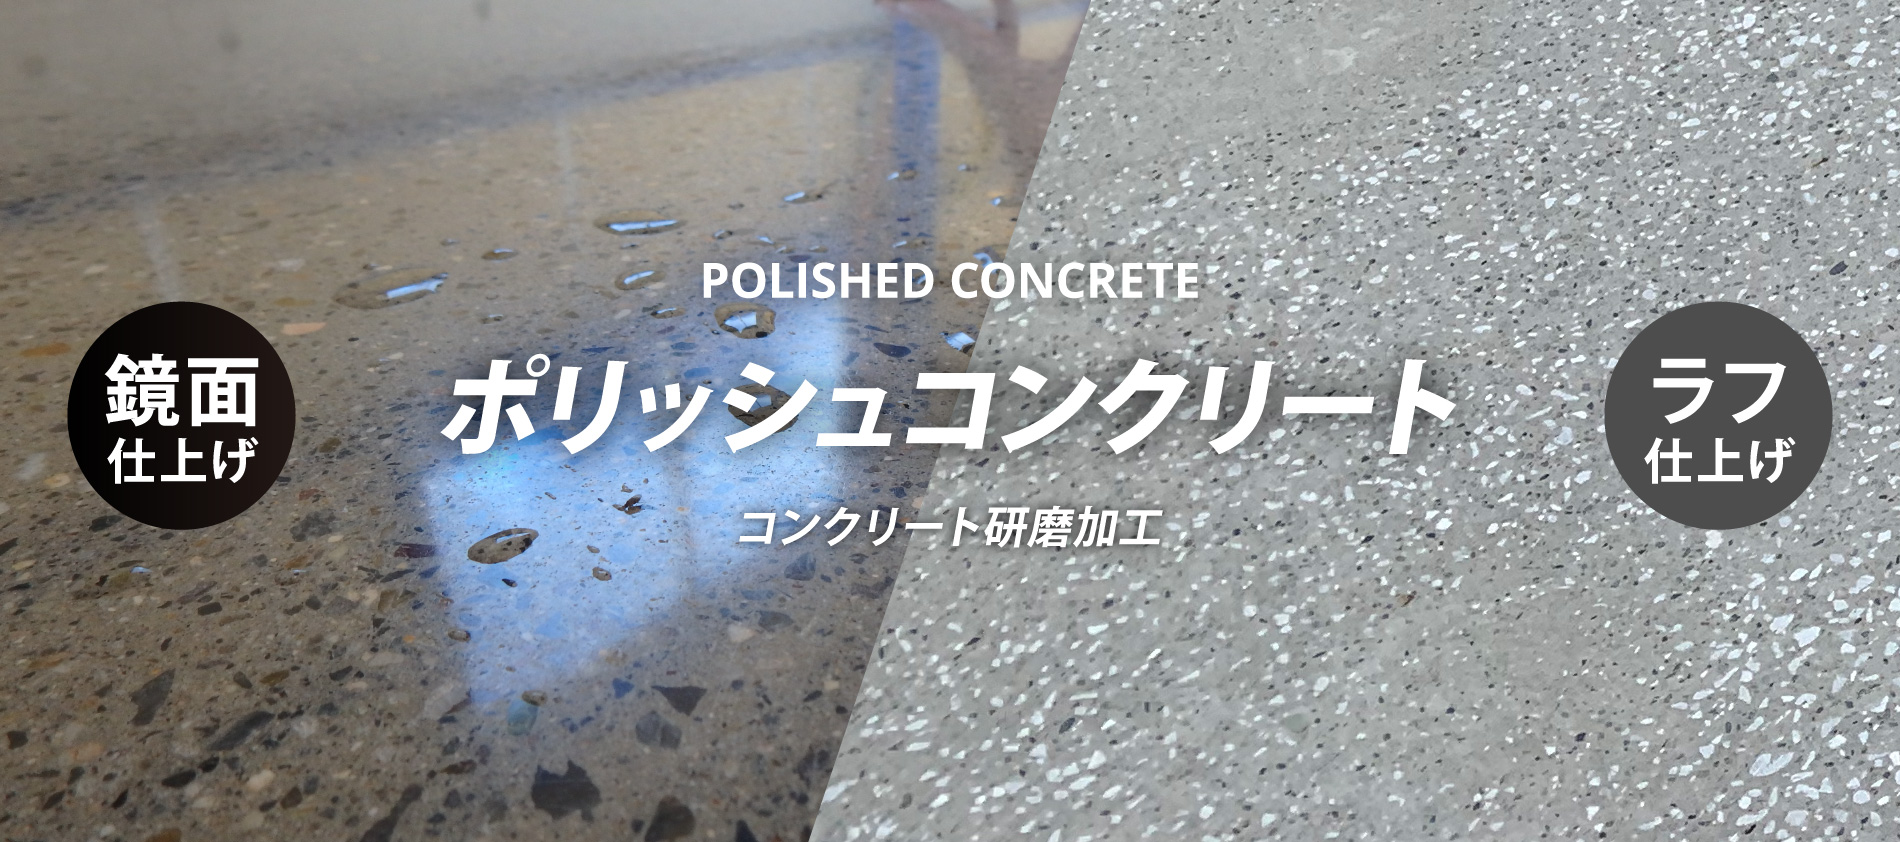 コンクリート研磨「ポリッシュコンクリート」」